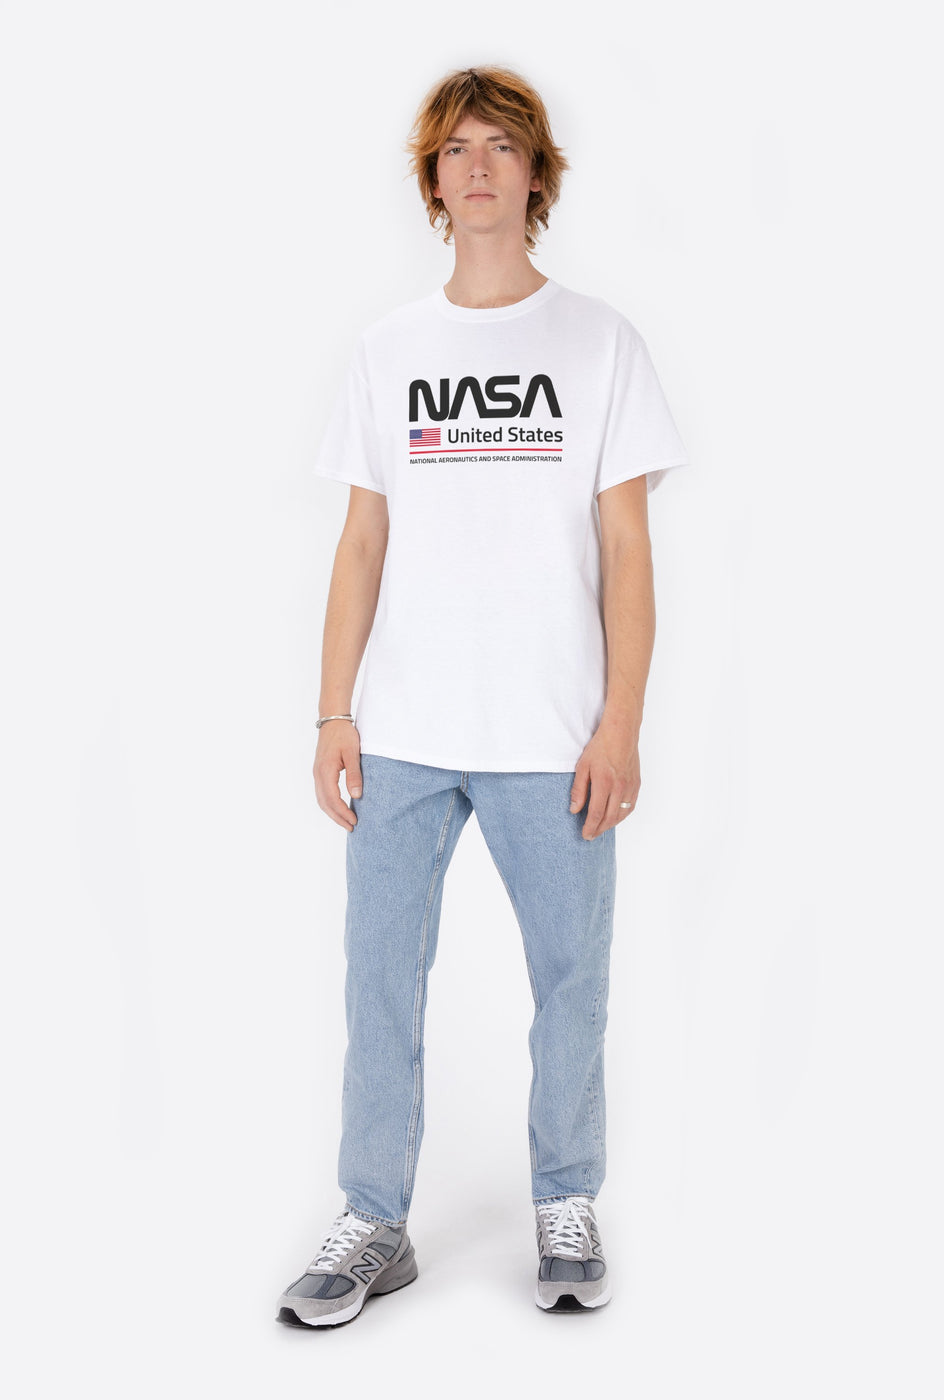 T-Shirt S/S NASA United States